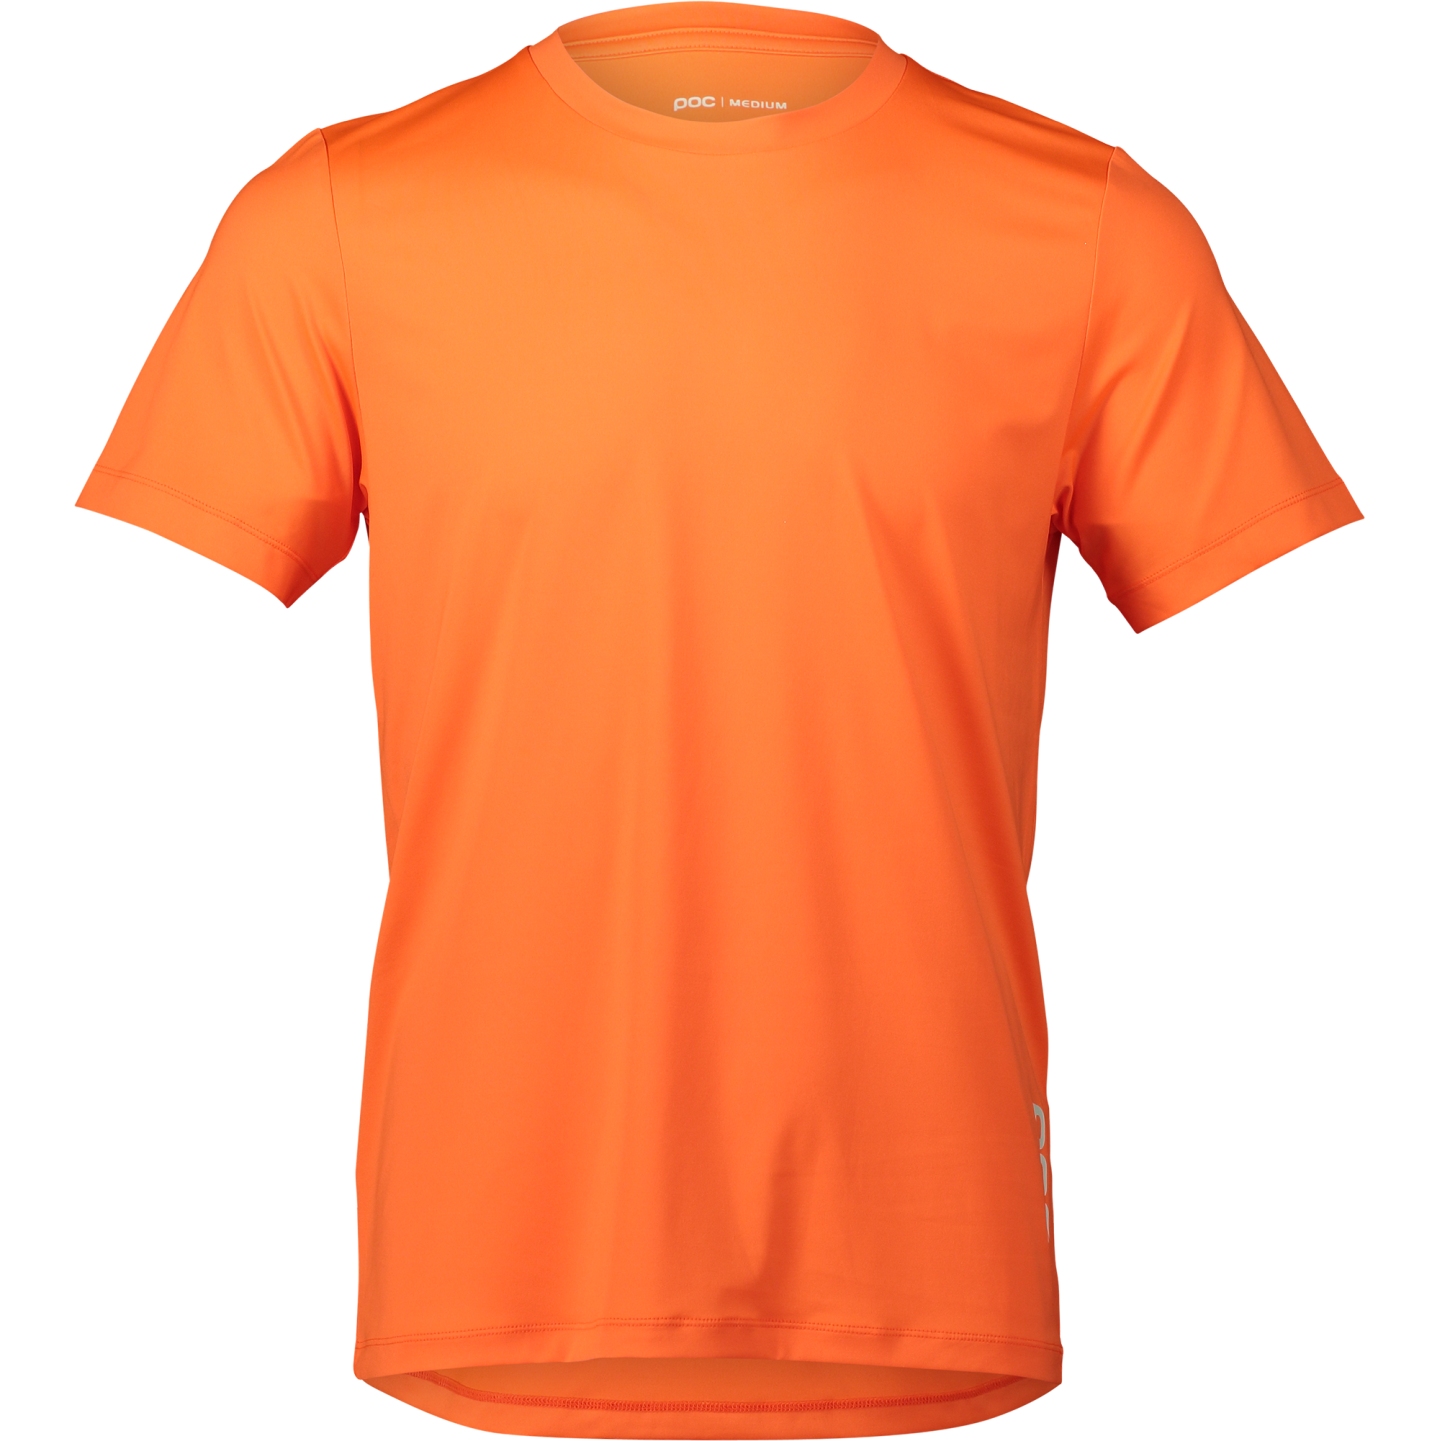 Produktbild von POC Reform Enduro Light T-Shirt Herren - 1205 Zink Orange